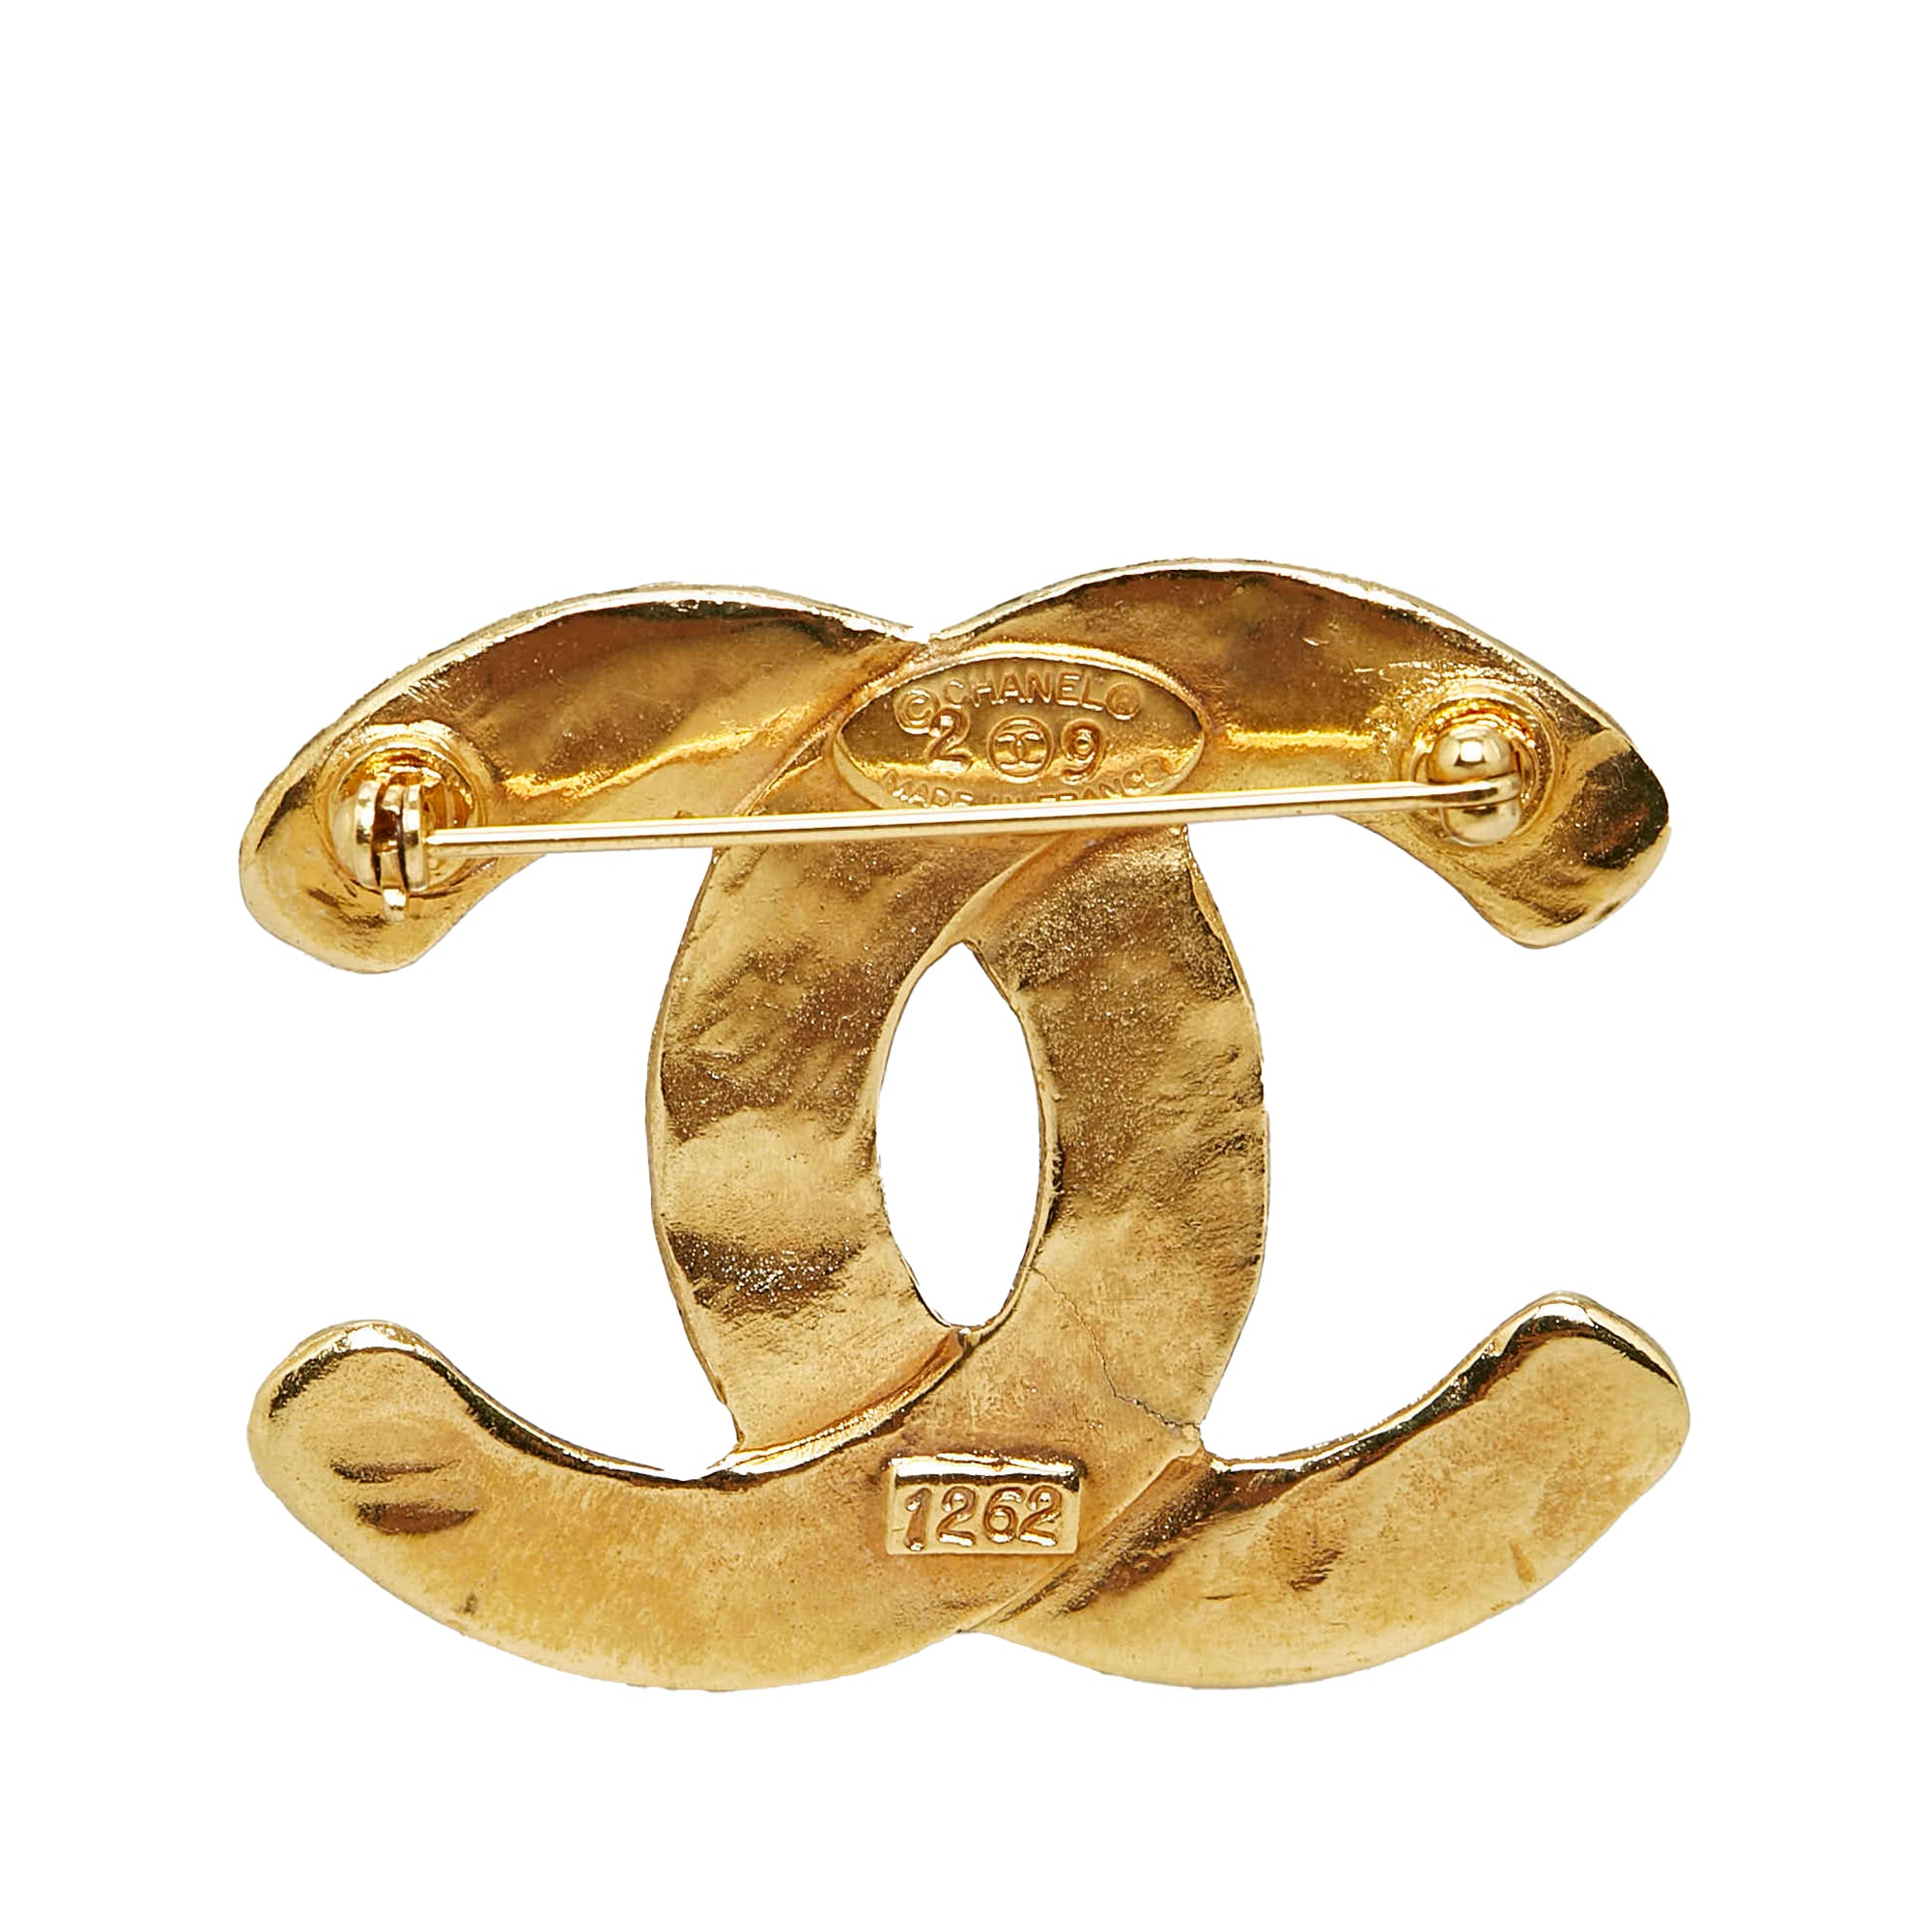 Gold Louis Vuitton Book de Reuil Earrings